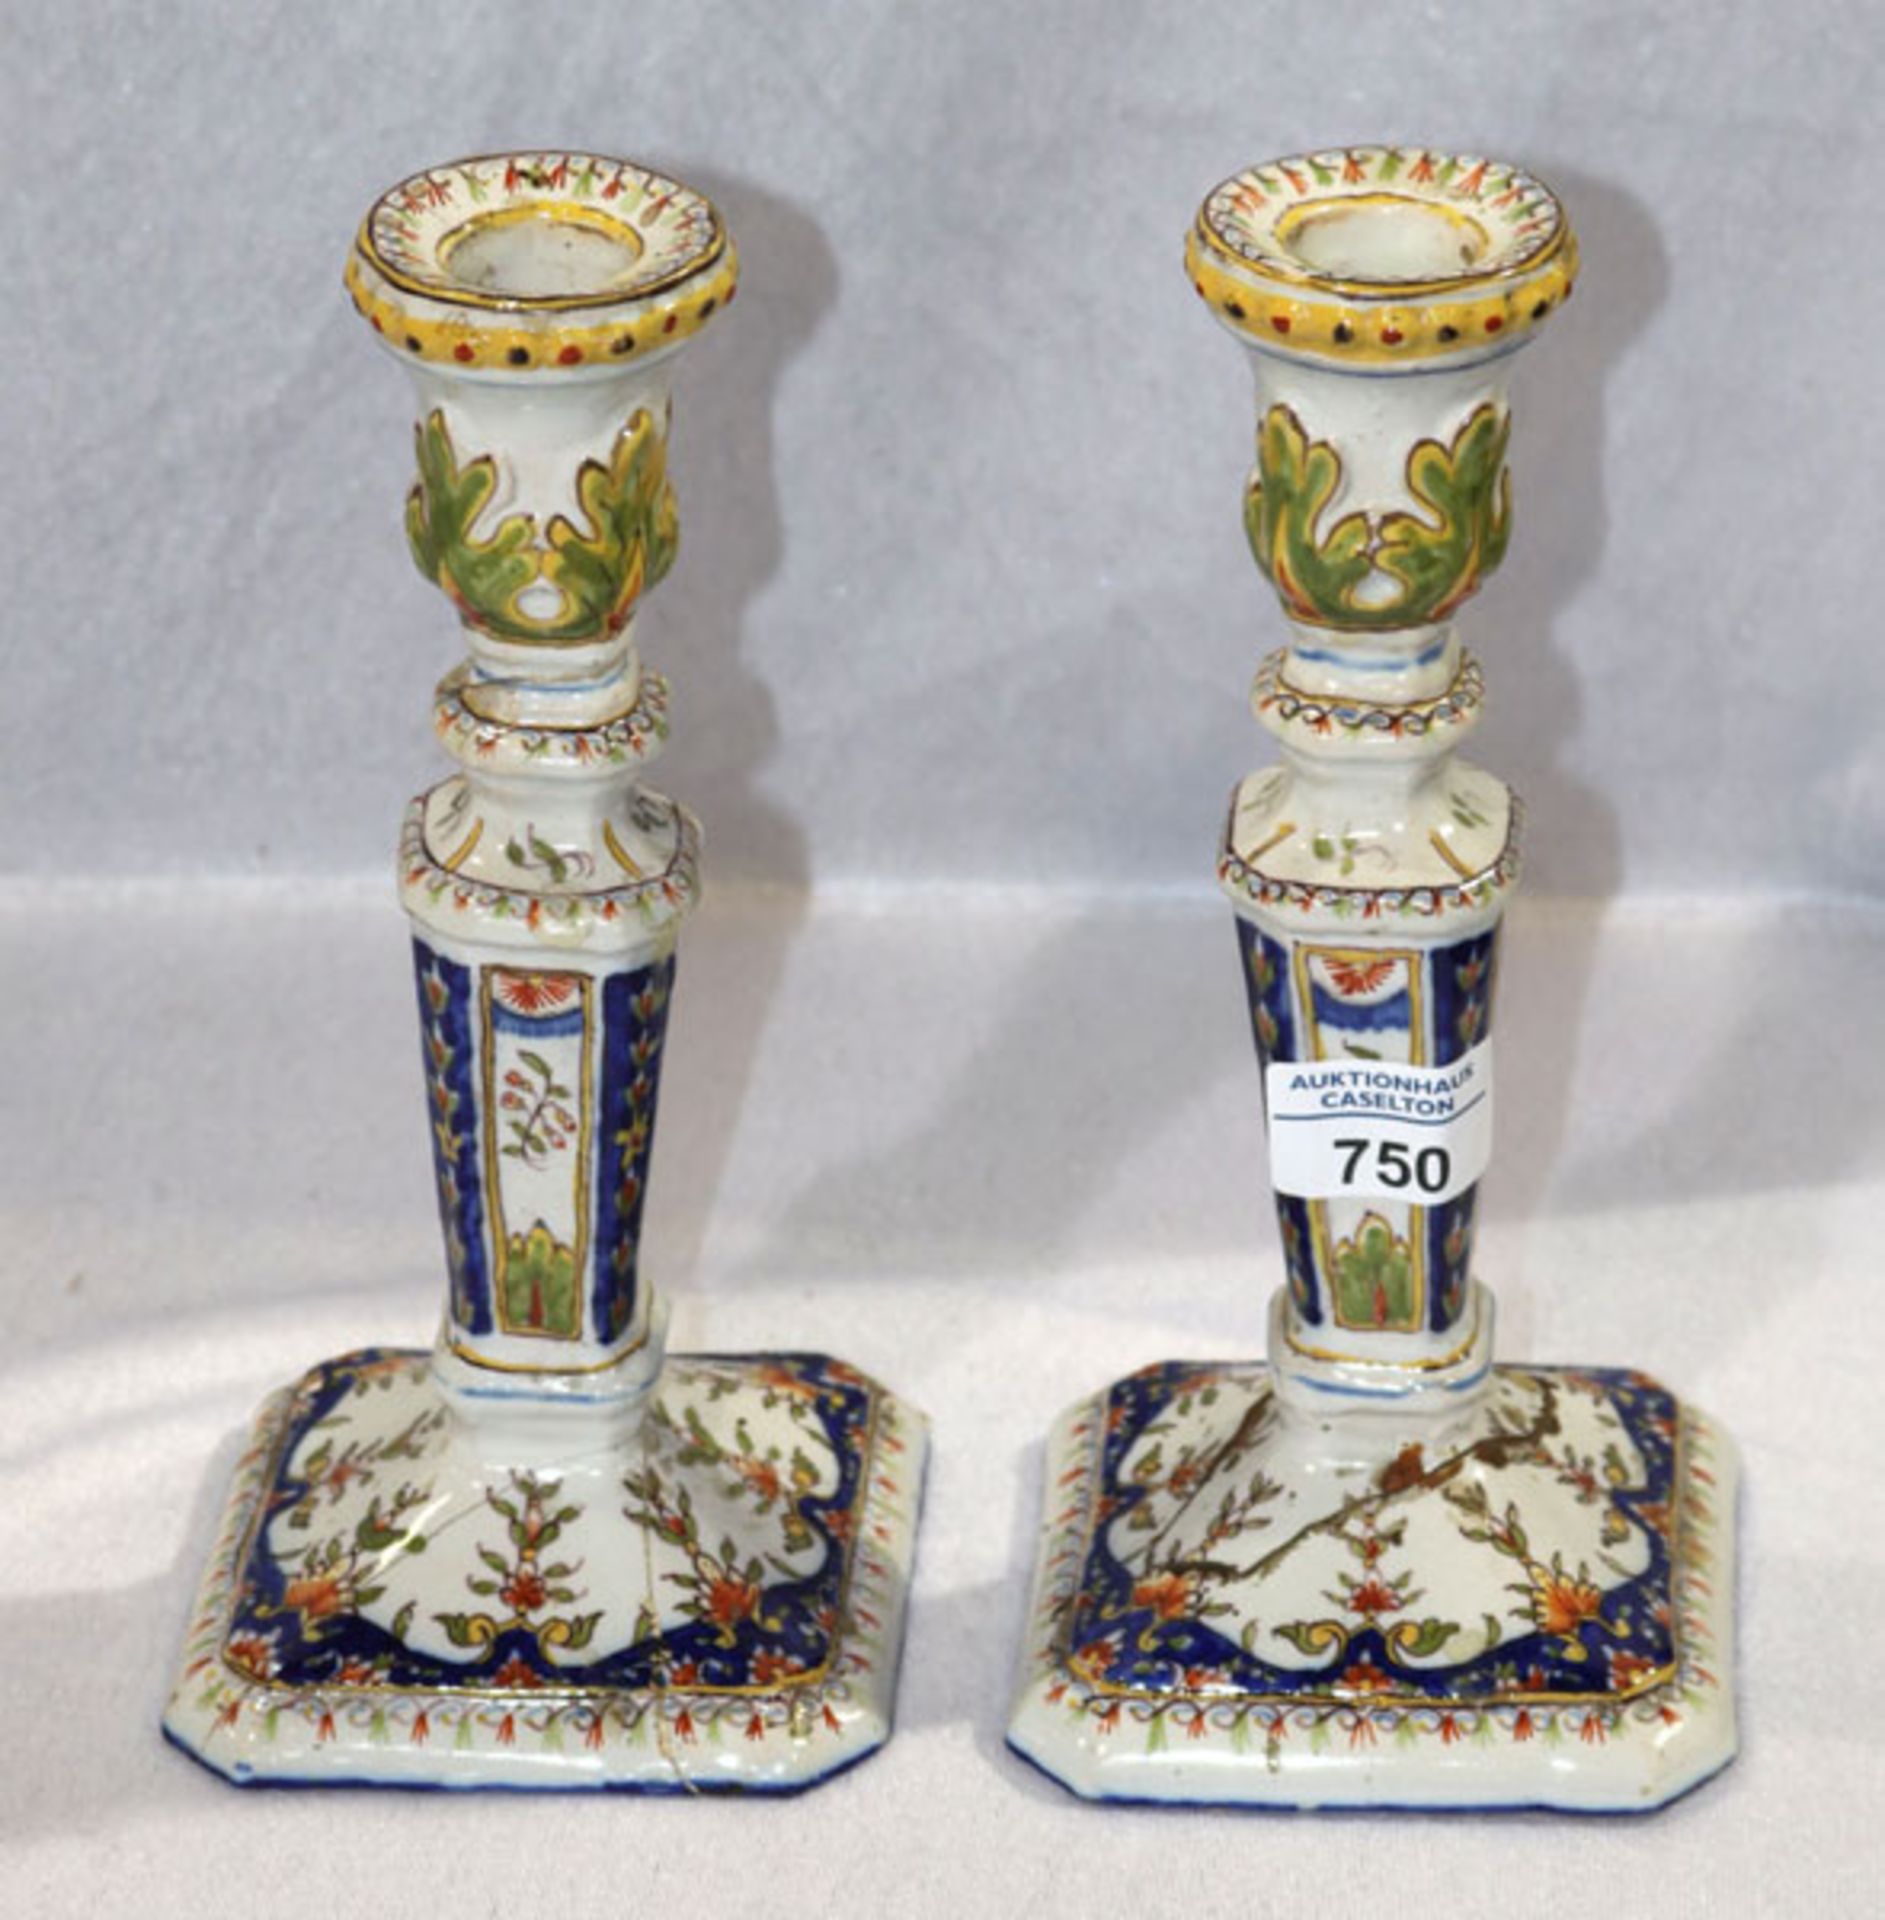 Paar Keramik Kerzenleuchter mit Floraldekor, H 23 cm, beschädigt und geklebt